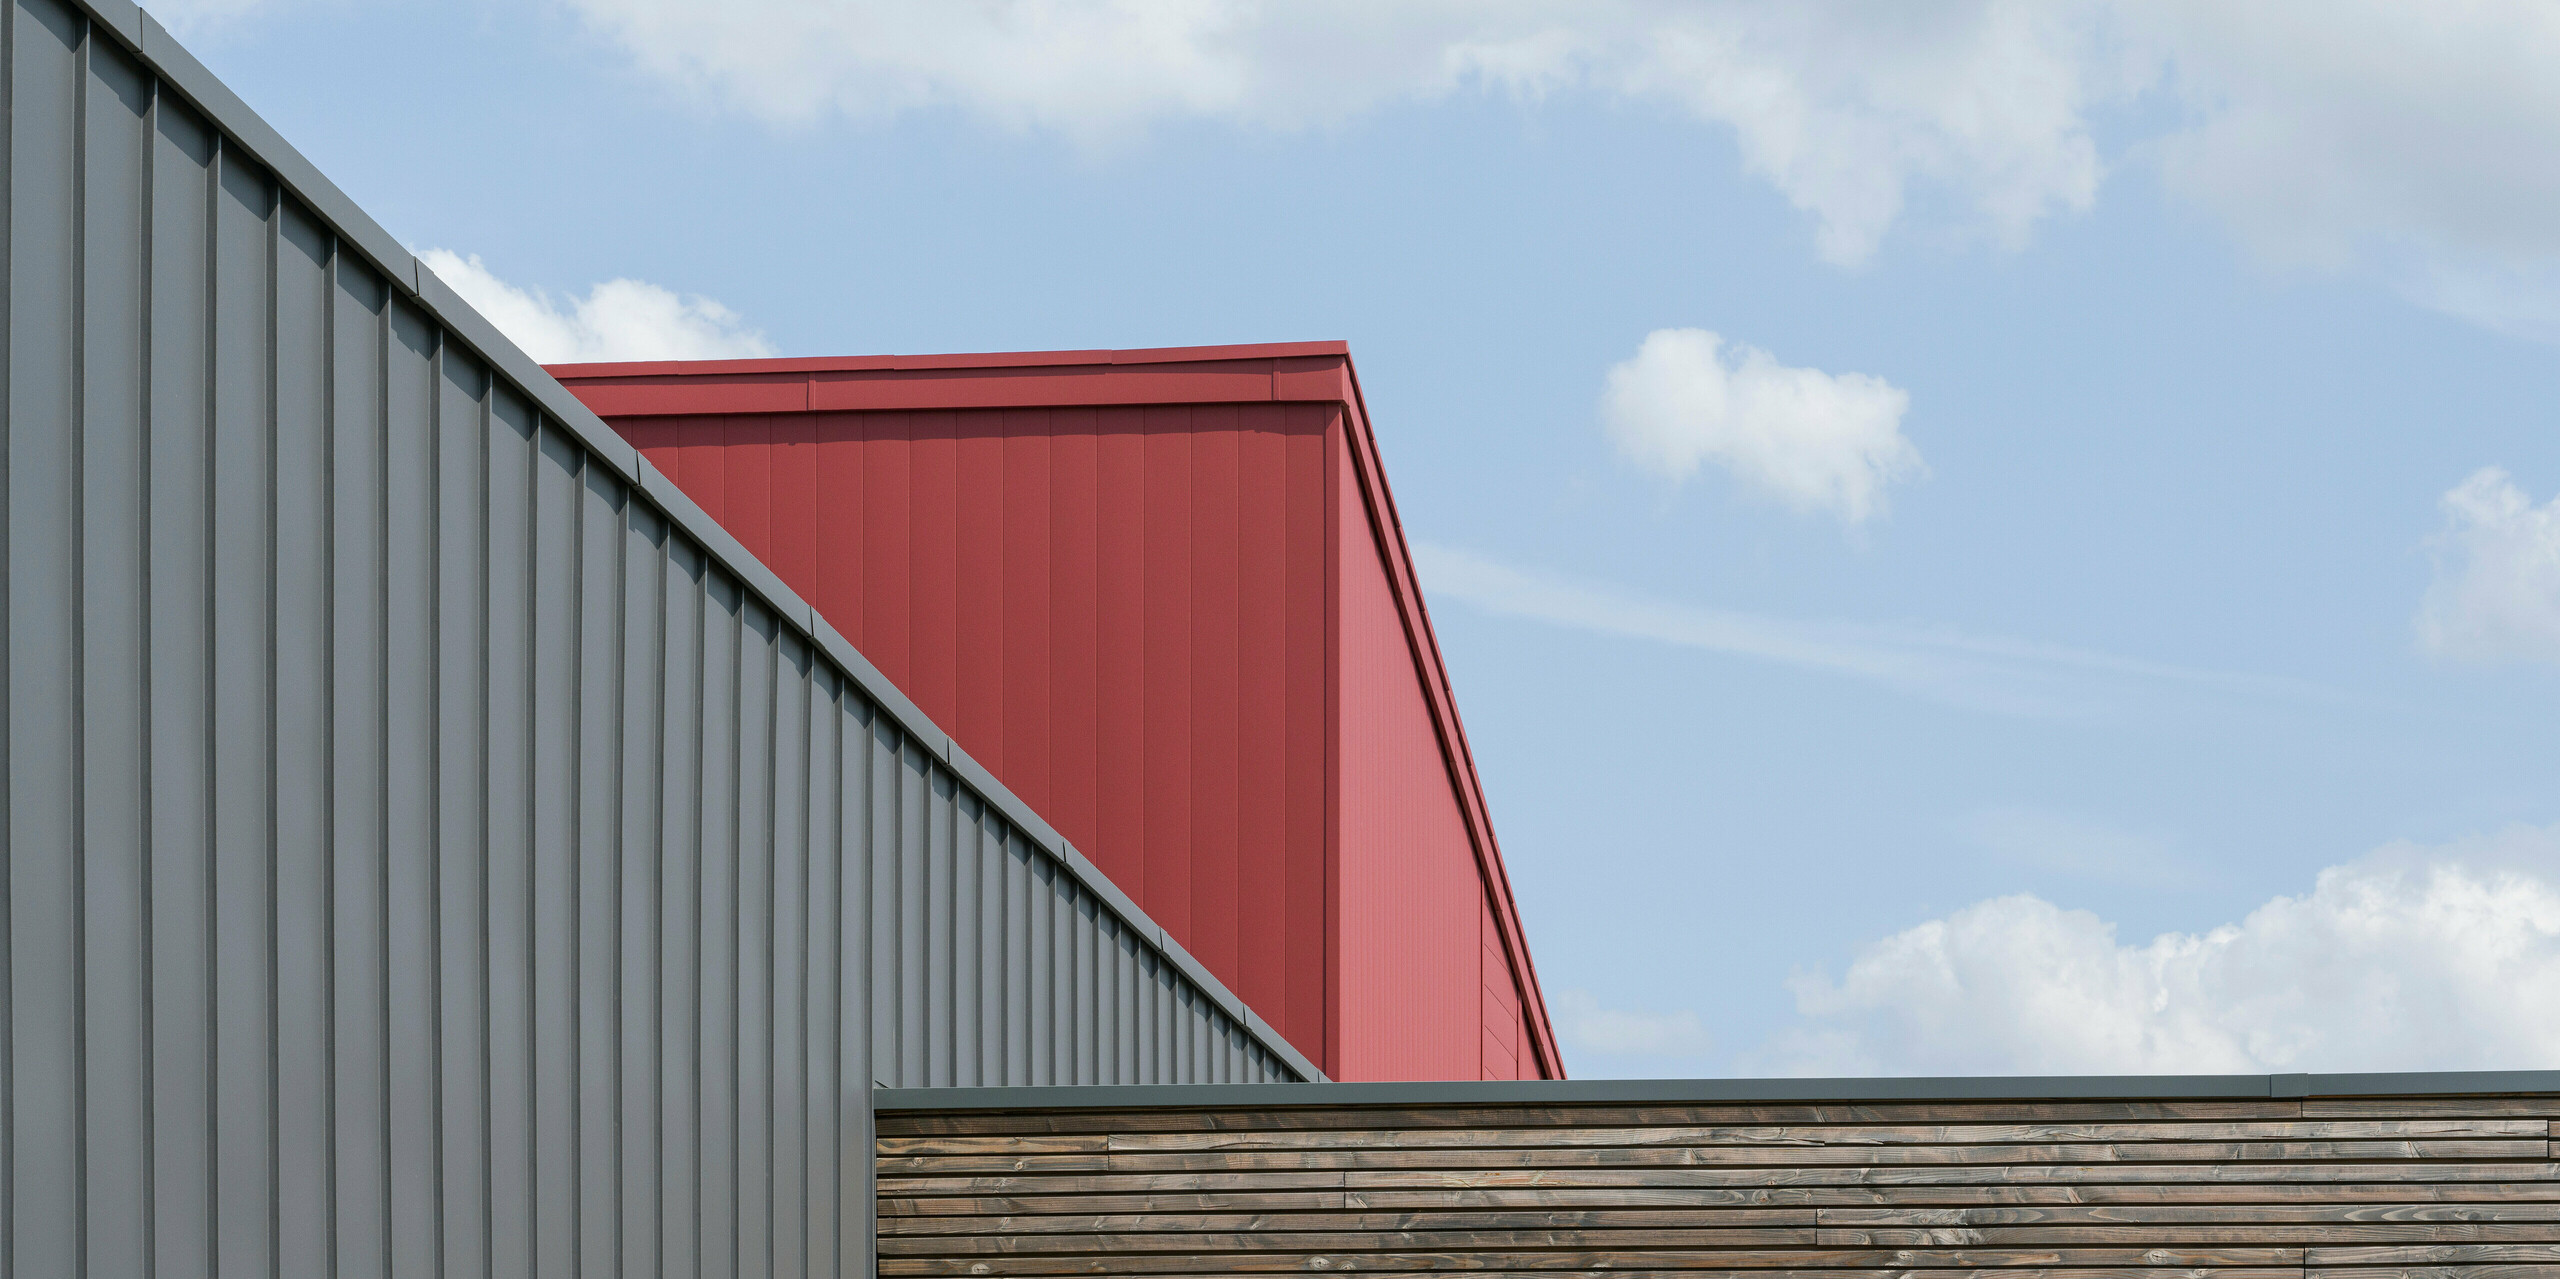 Nahaufnahme der Dach- und Fassadengestaltung eines modernen Gebäudes. Im Vordergrund ist eine Wand mit horizontaler Holzverkleidung zu sehen, die eine natürliche Textur aufweist. Dahinter erhebt sich eine dunkelgraue PREFALZ-Fassade mit vertikalen Scharen, die eine industrielle Eleganz ausstrahlt. Über dieser Fassade zeigt sich ein Ausschnitt eines leuchtend roten Dach- und Fassadensystems aus Aluminium, das einen auffallenden Farbkontrast bietet und die moderne Architektur unterstreicht.